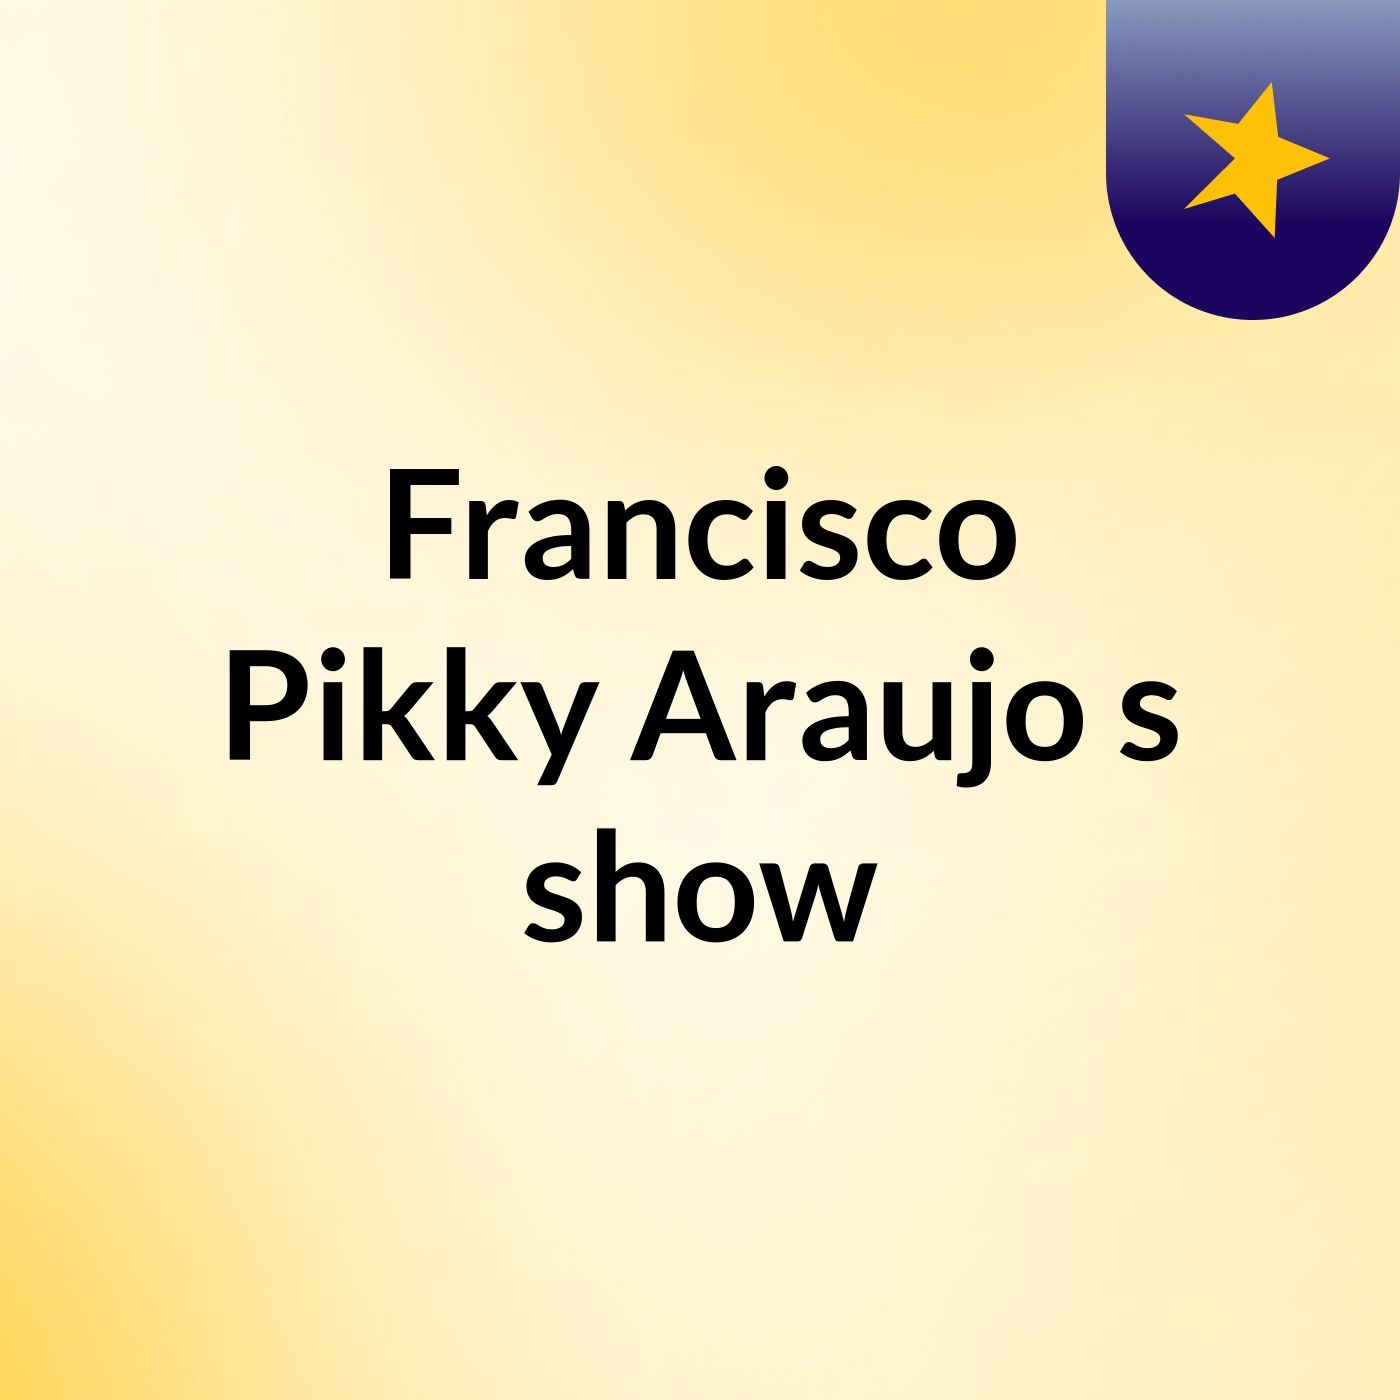 Francisco Pikky Araujo's show